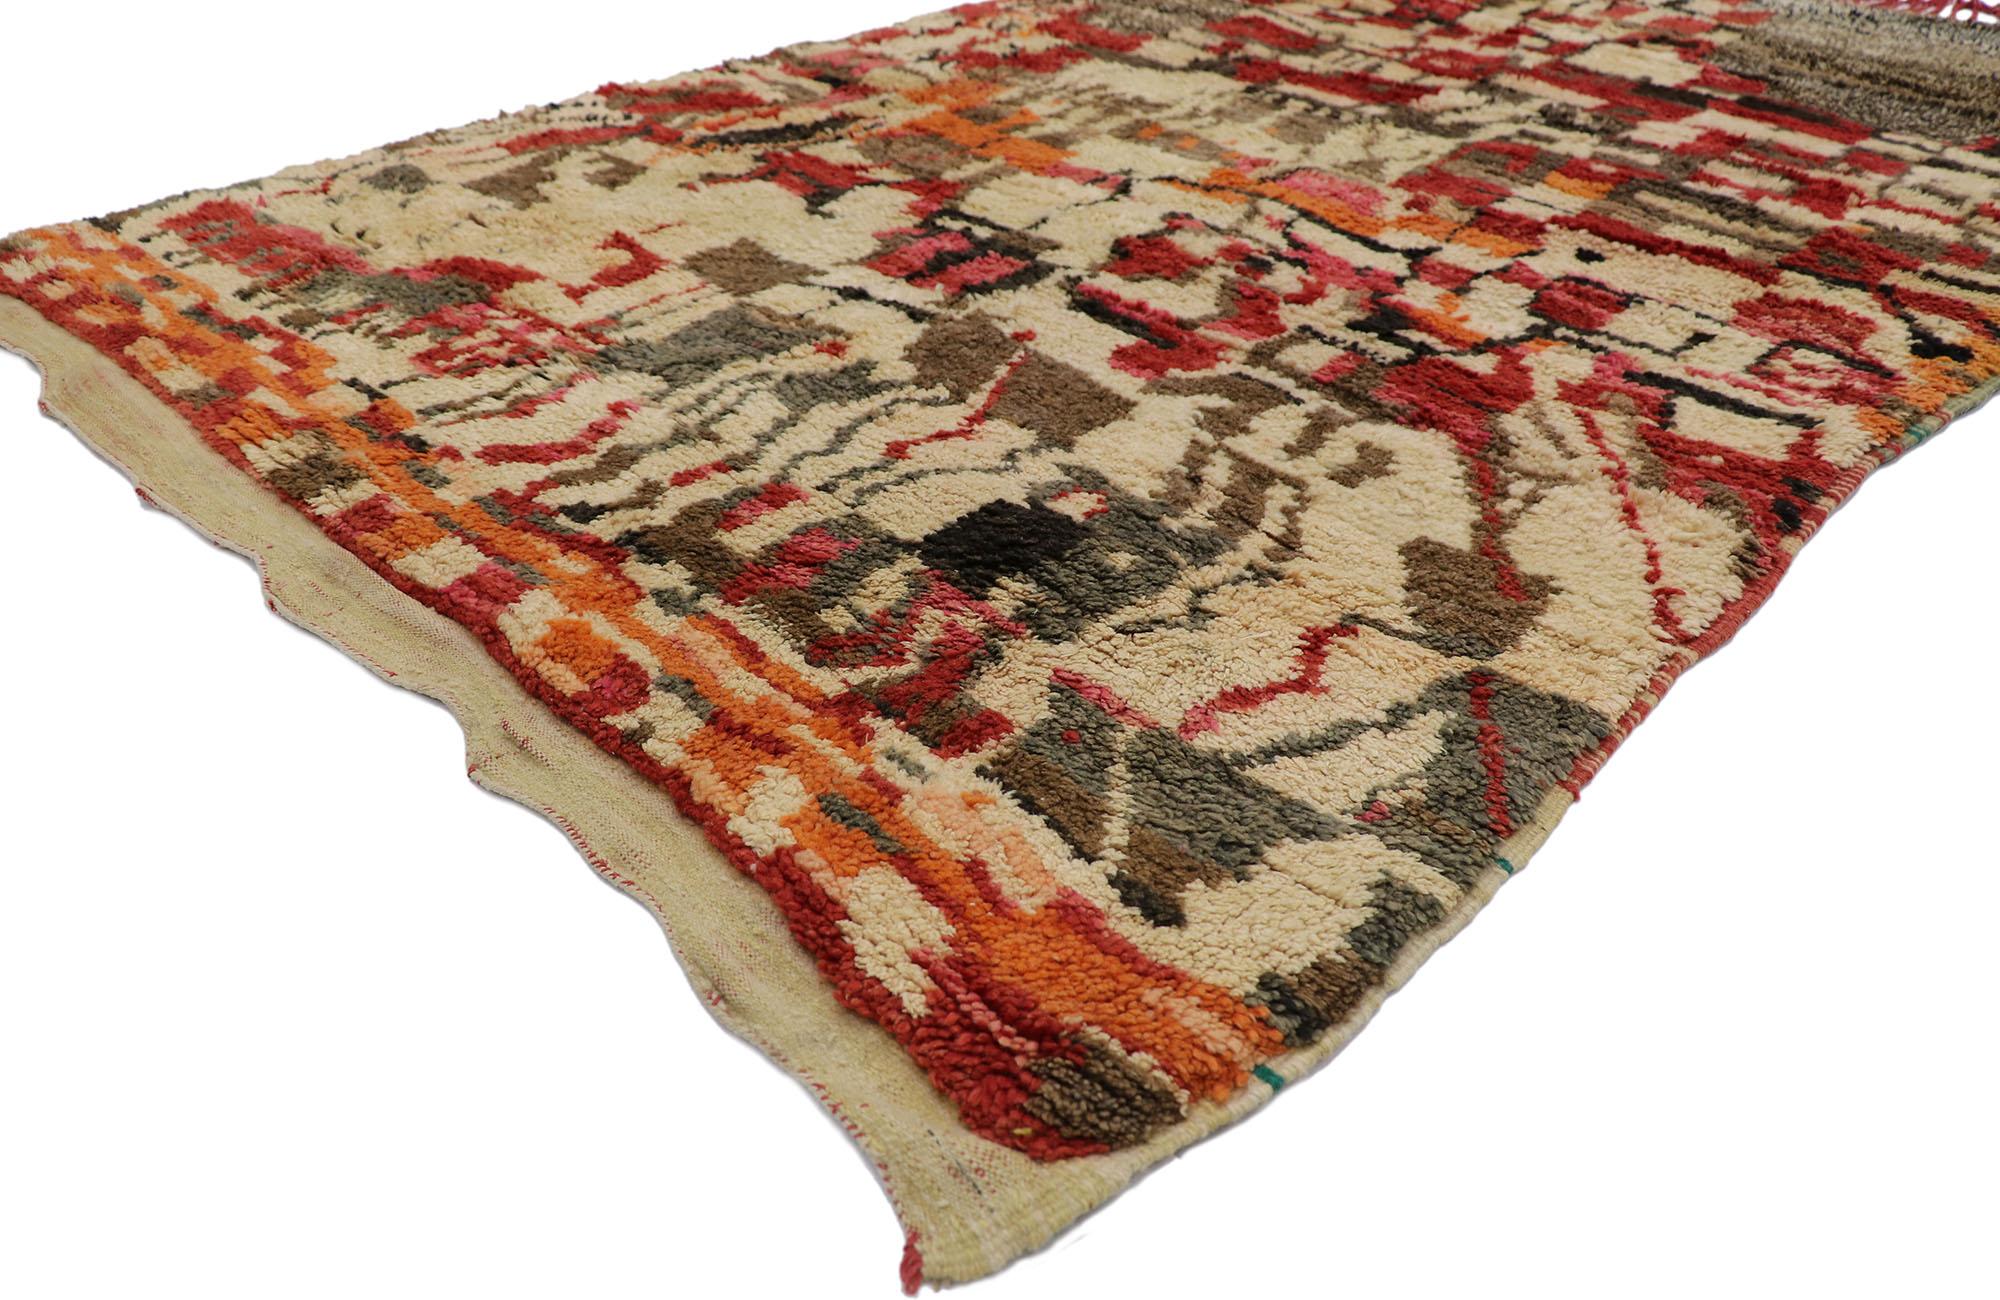 21664 Vintage Berber Marokko Teppich mit Bauhaus-Stil 04'10 x 07'08. Dieser handgeknüpfte marokkanische Berberteppich aus Wolle mit seinem abstrakten, ausdrucksstarken Design in lebhaften Farben, unglaublichen Details und Texturen ist eine fesselnde